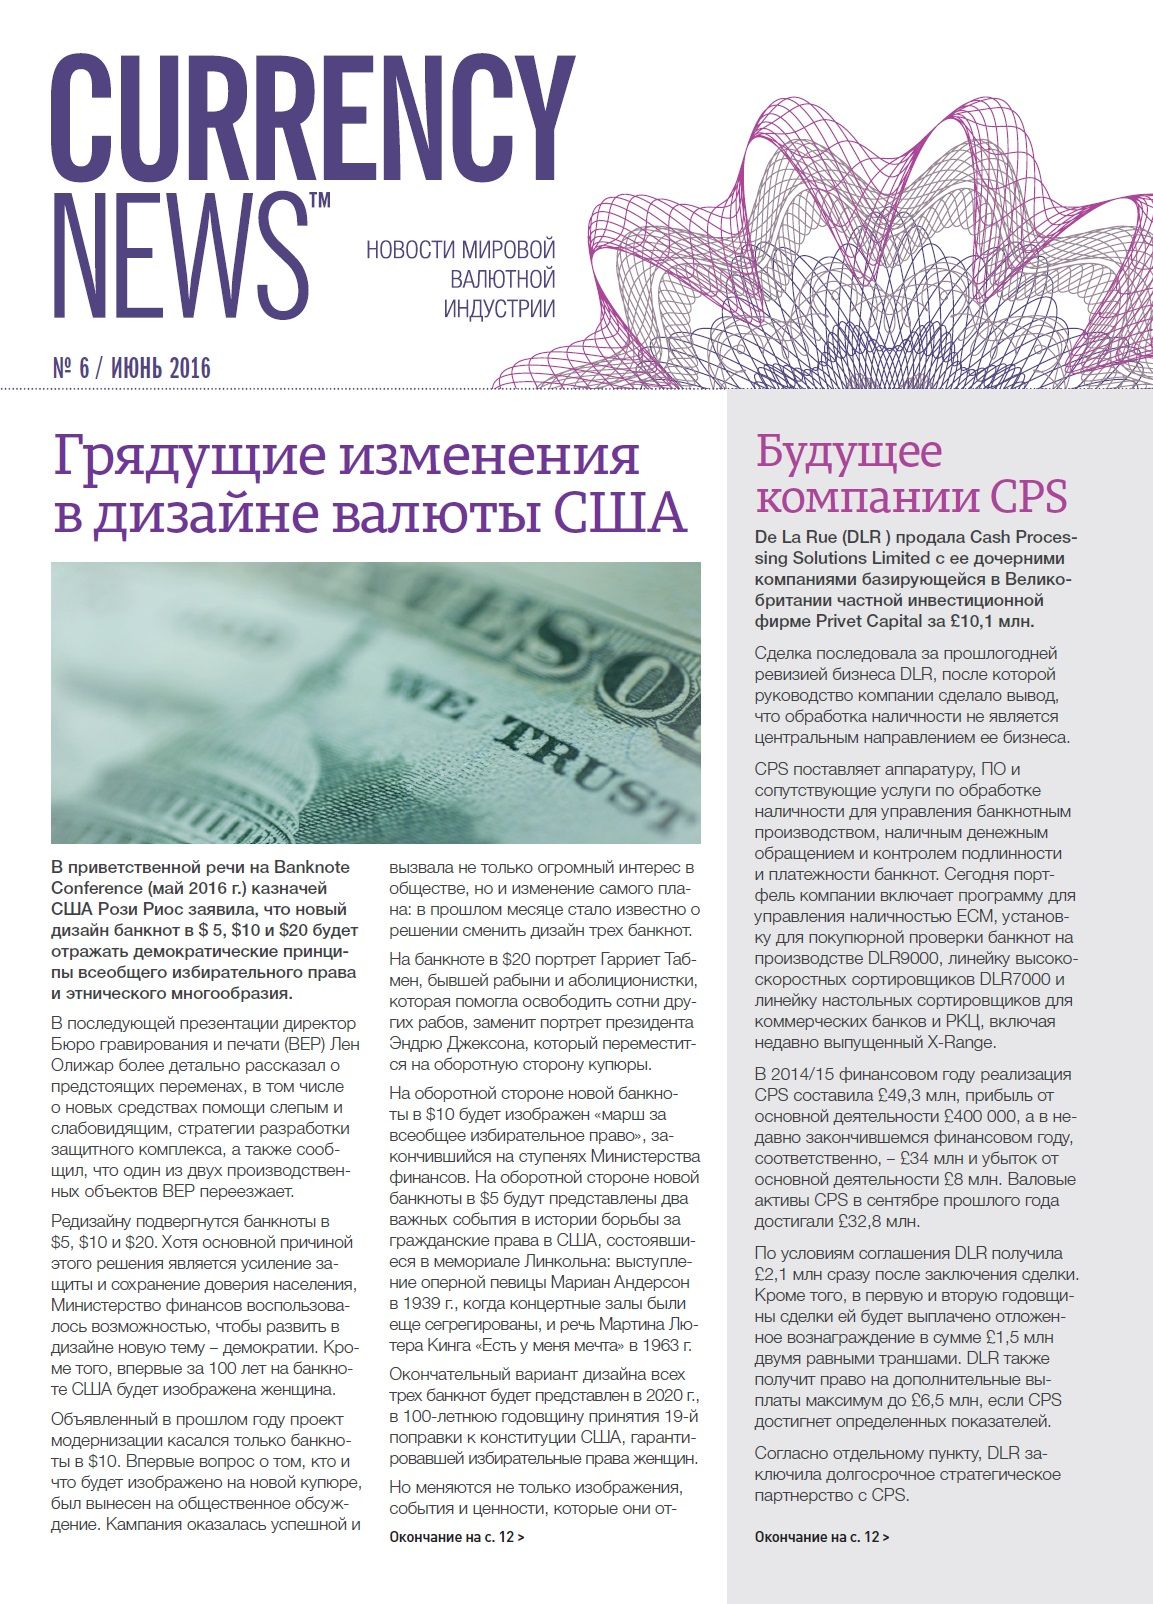 «Currency News: Новости мировой валютной индустрии» № 6, 2016